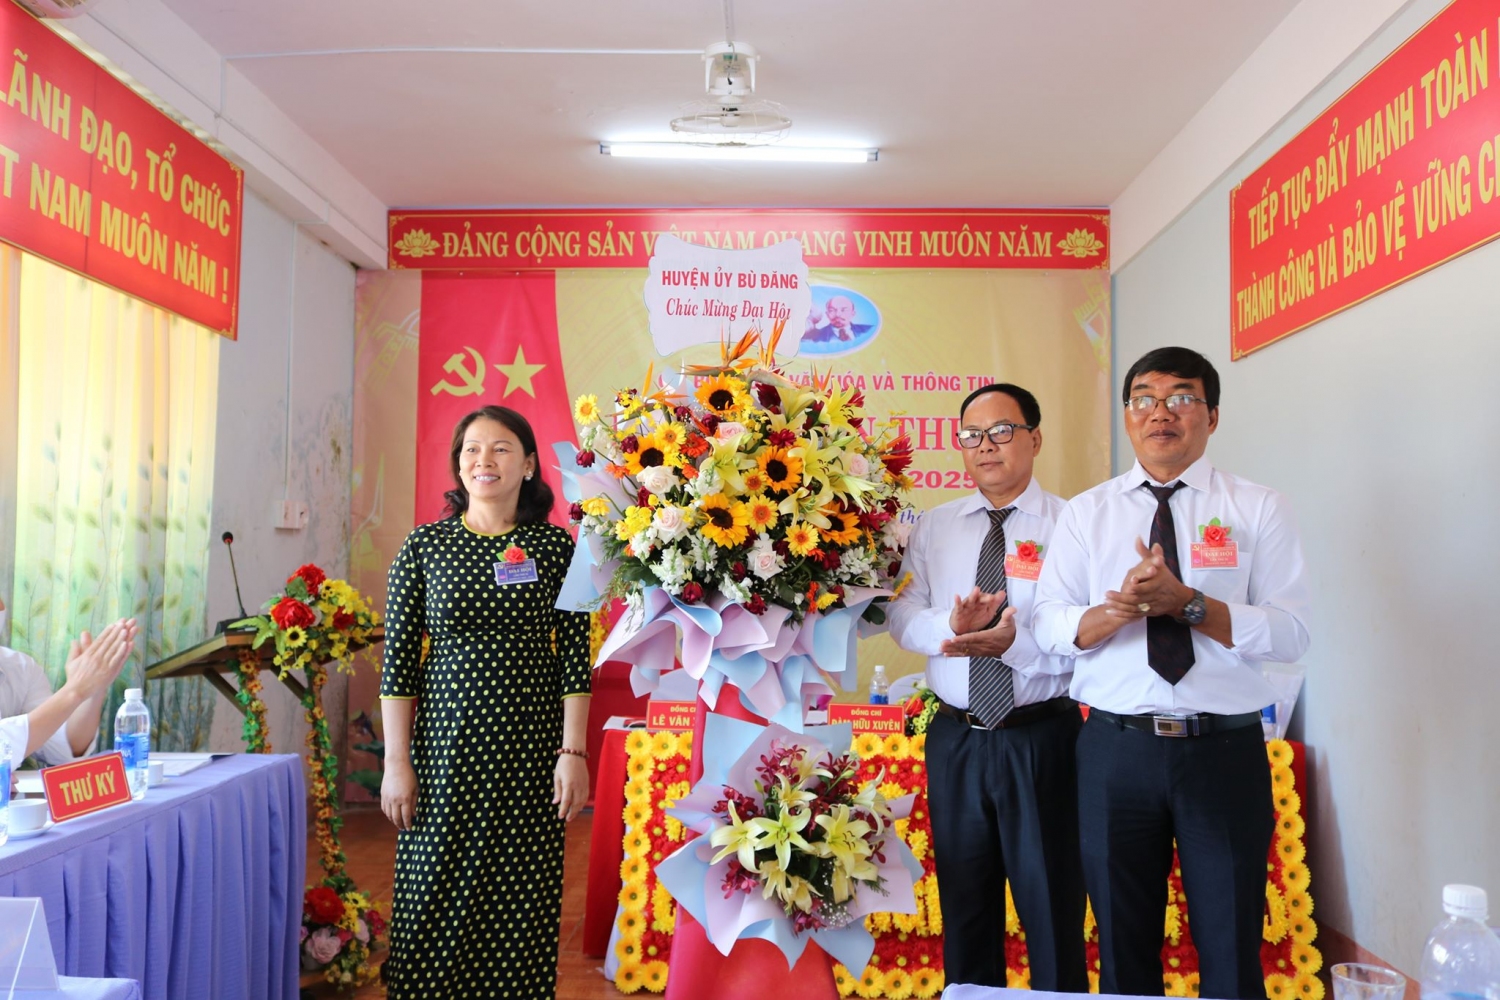 Phó Chủ tịch UBND huyện Điểu Hà Hồng Lý tặng hoa chúc mừng đại hội